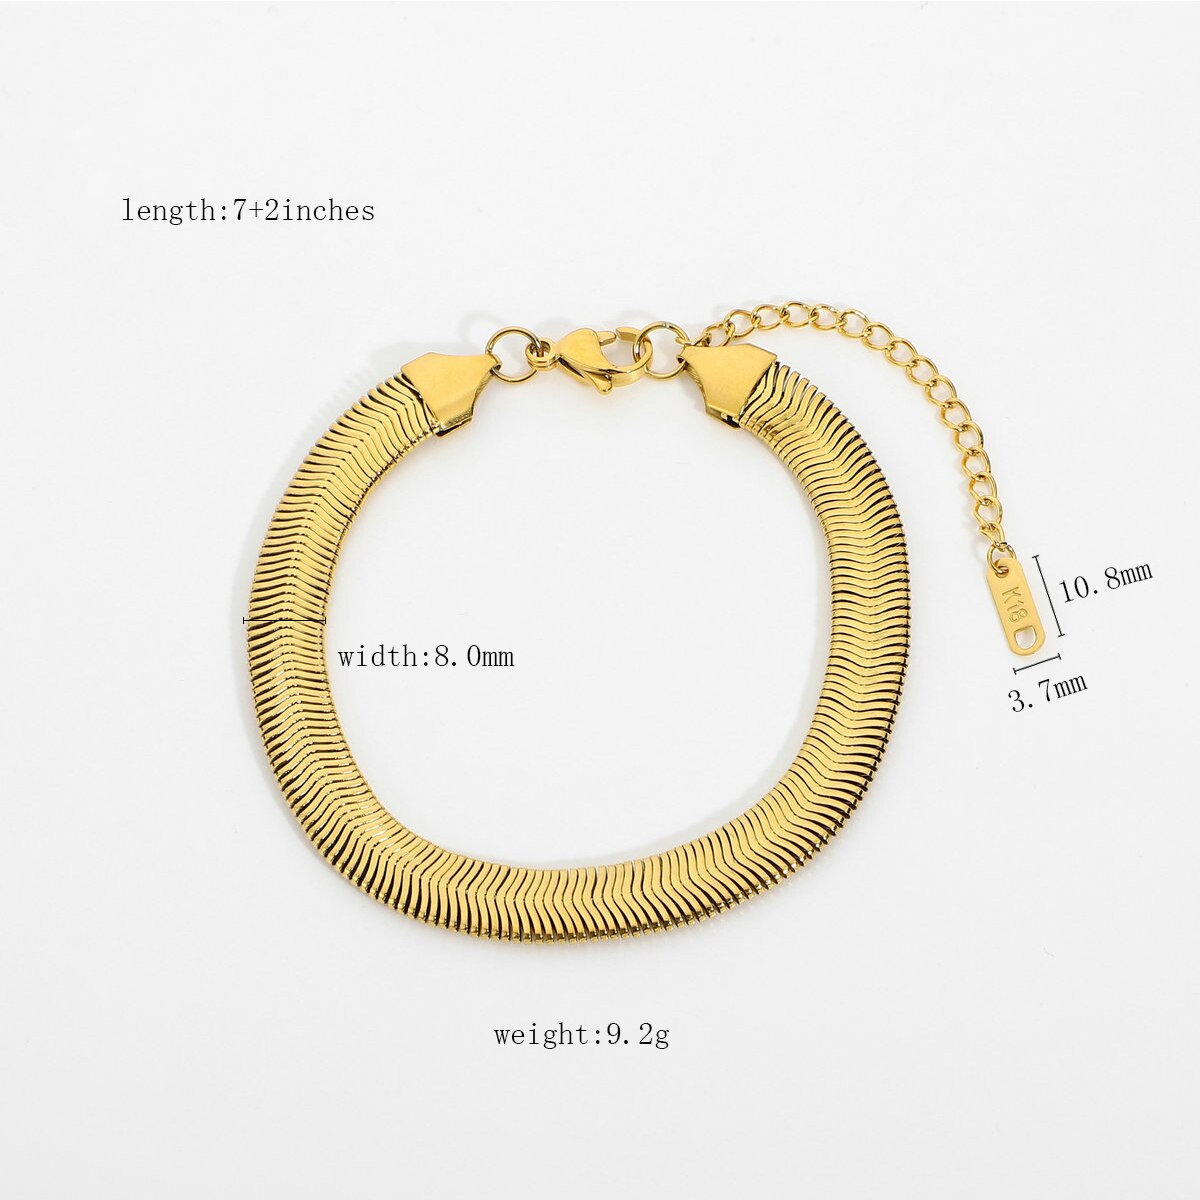 8mm vergoldete Edelstahl Schlange Pilar Kette Armbänder Halskette für Frauen Männer dicke Serpentin Knochen Kette Stapeln Schmuck